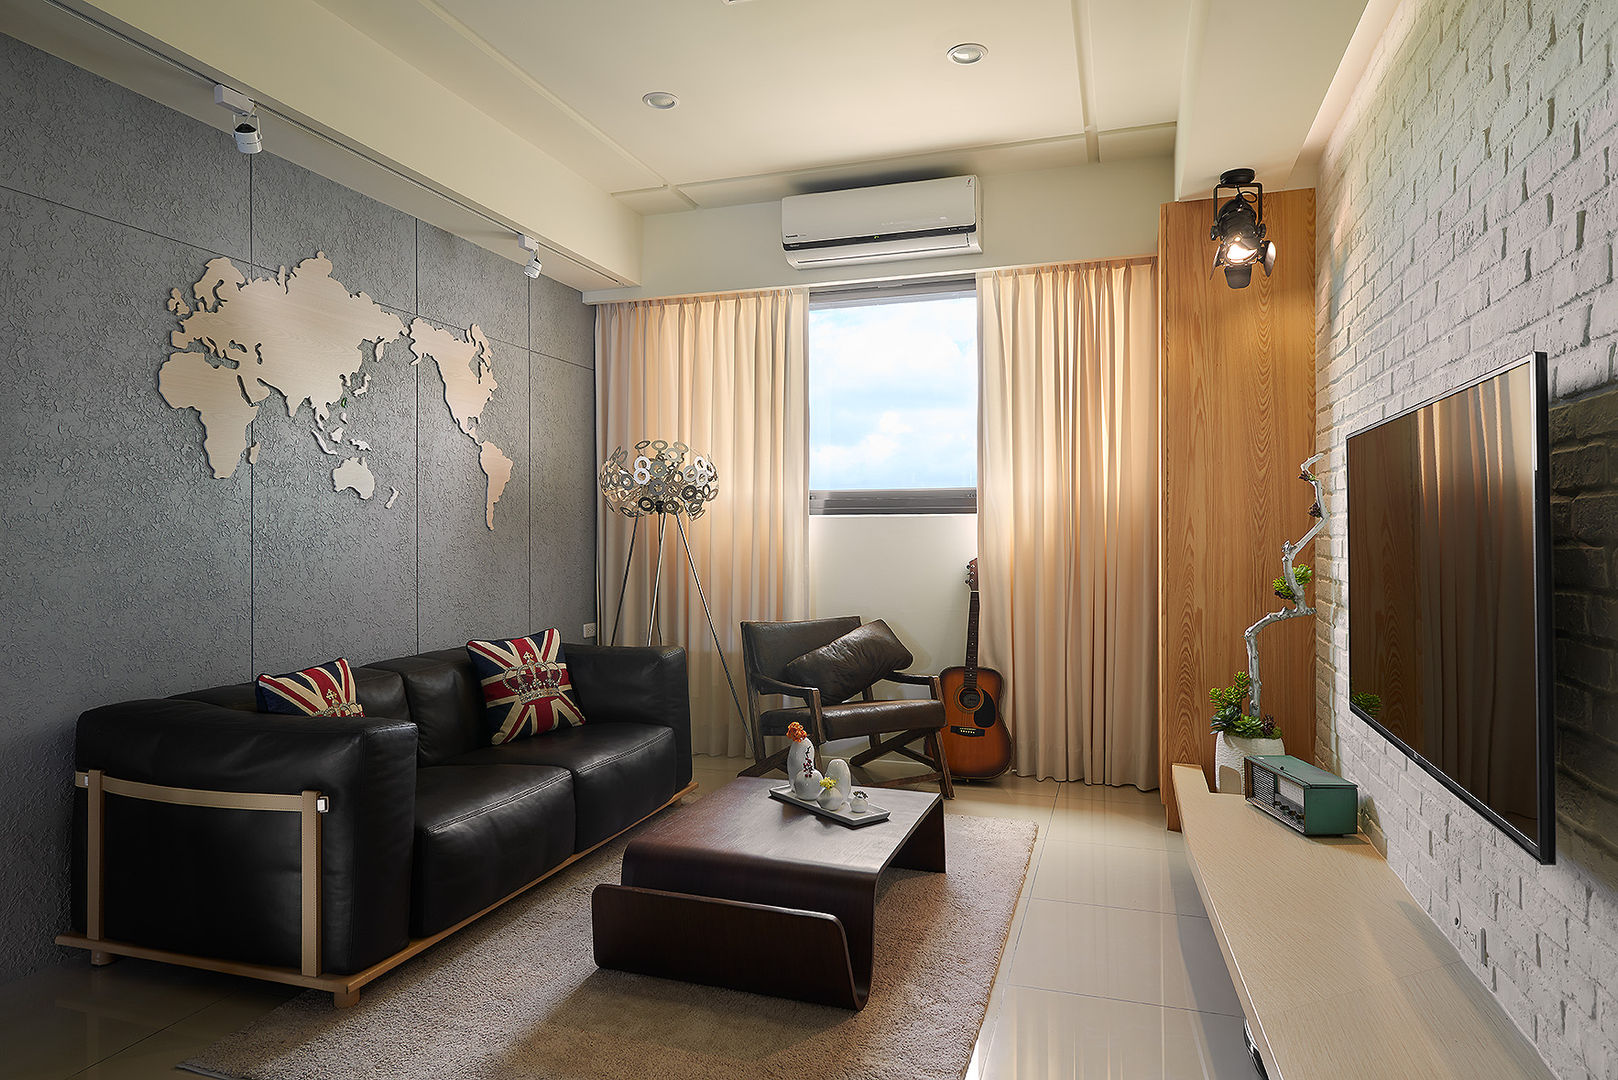 悠遊世界的旅行 趙玲室內設計 客廳 客廳,工業風,植栽